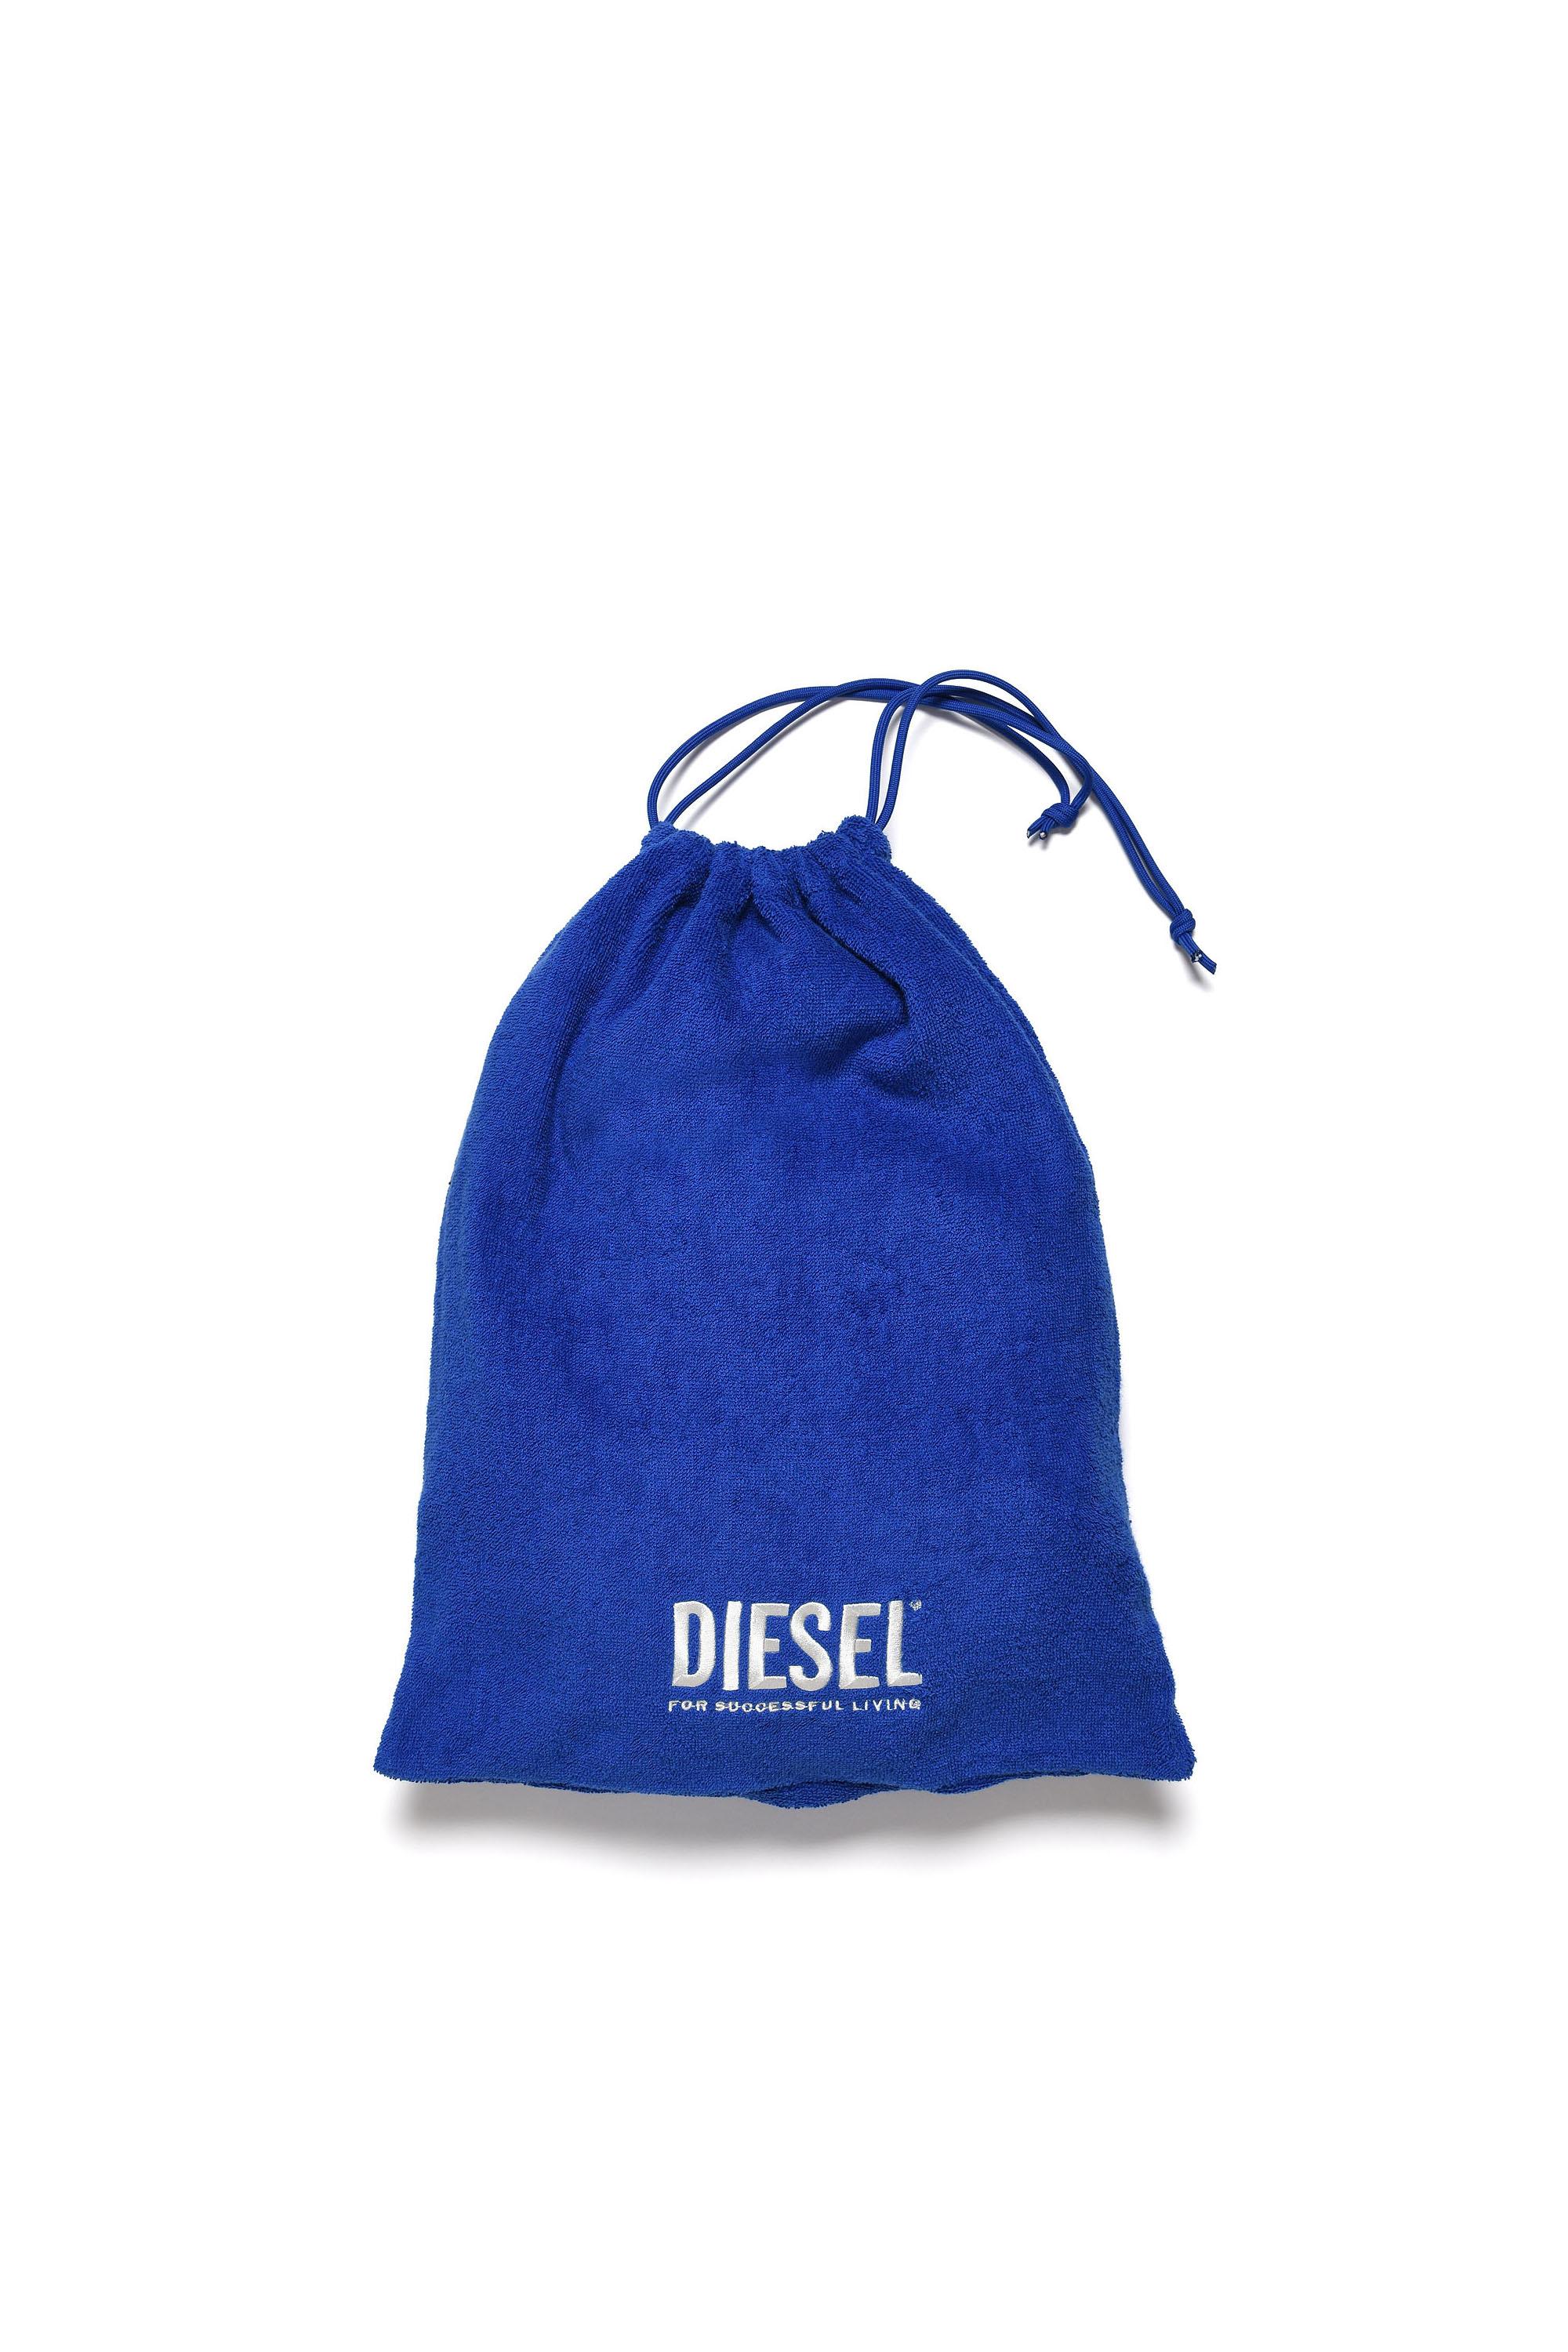 Diesel - MASPRYM, Blue - Image 4